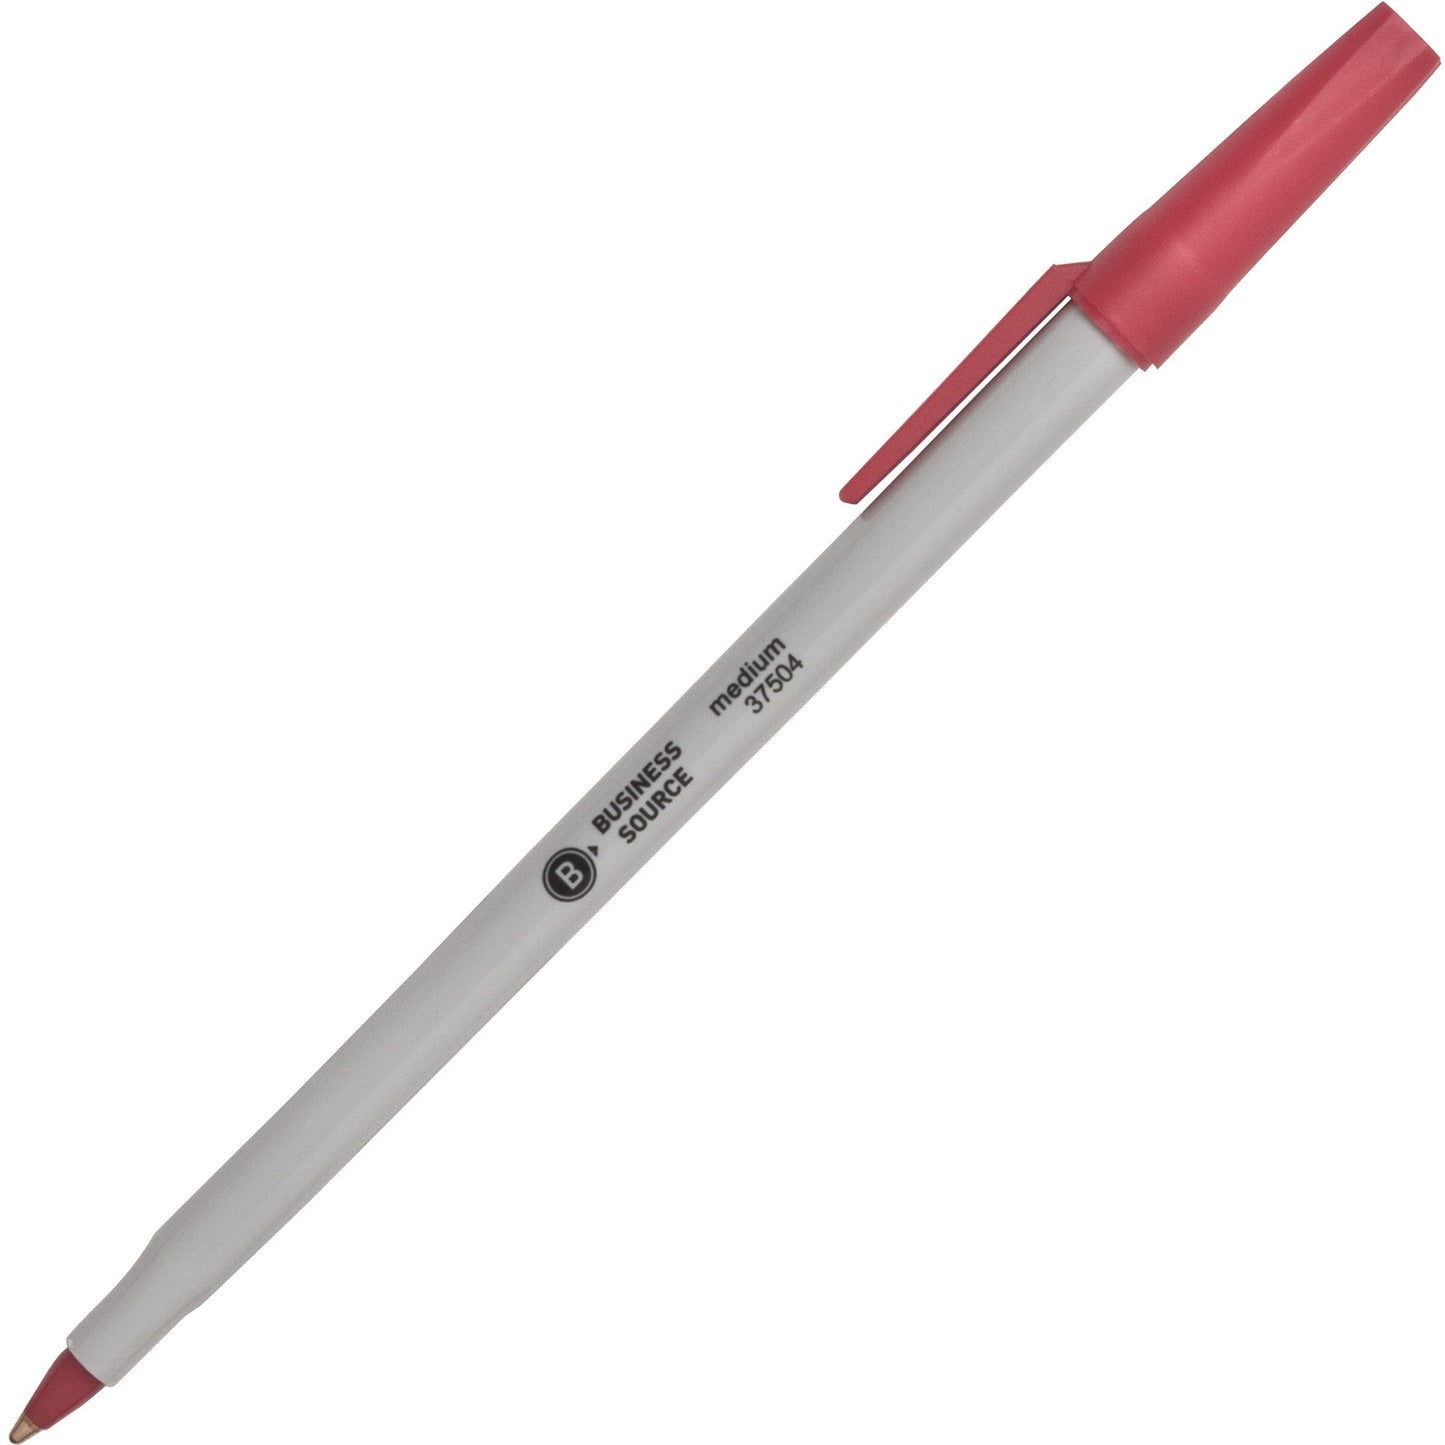 Business Source Medium Point Ballpoint Stick Pens